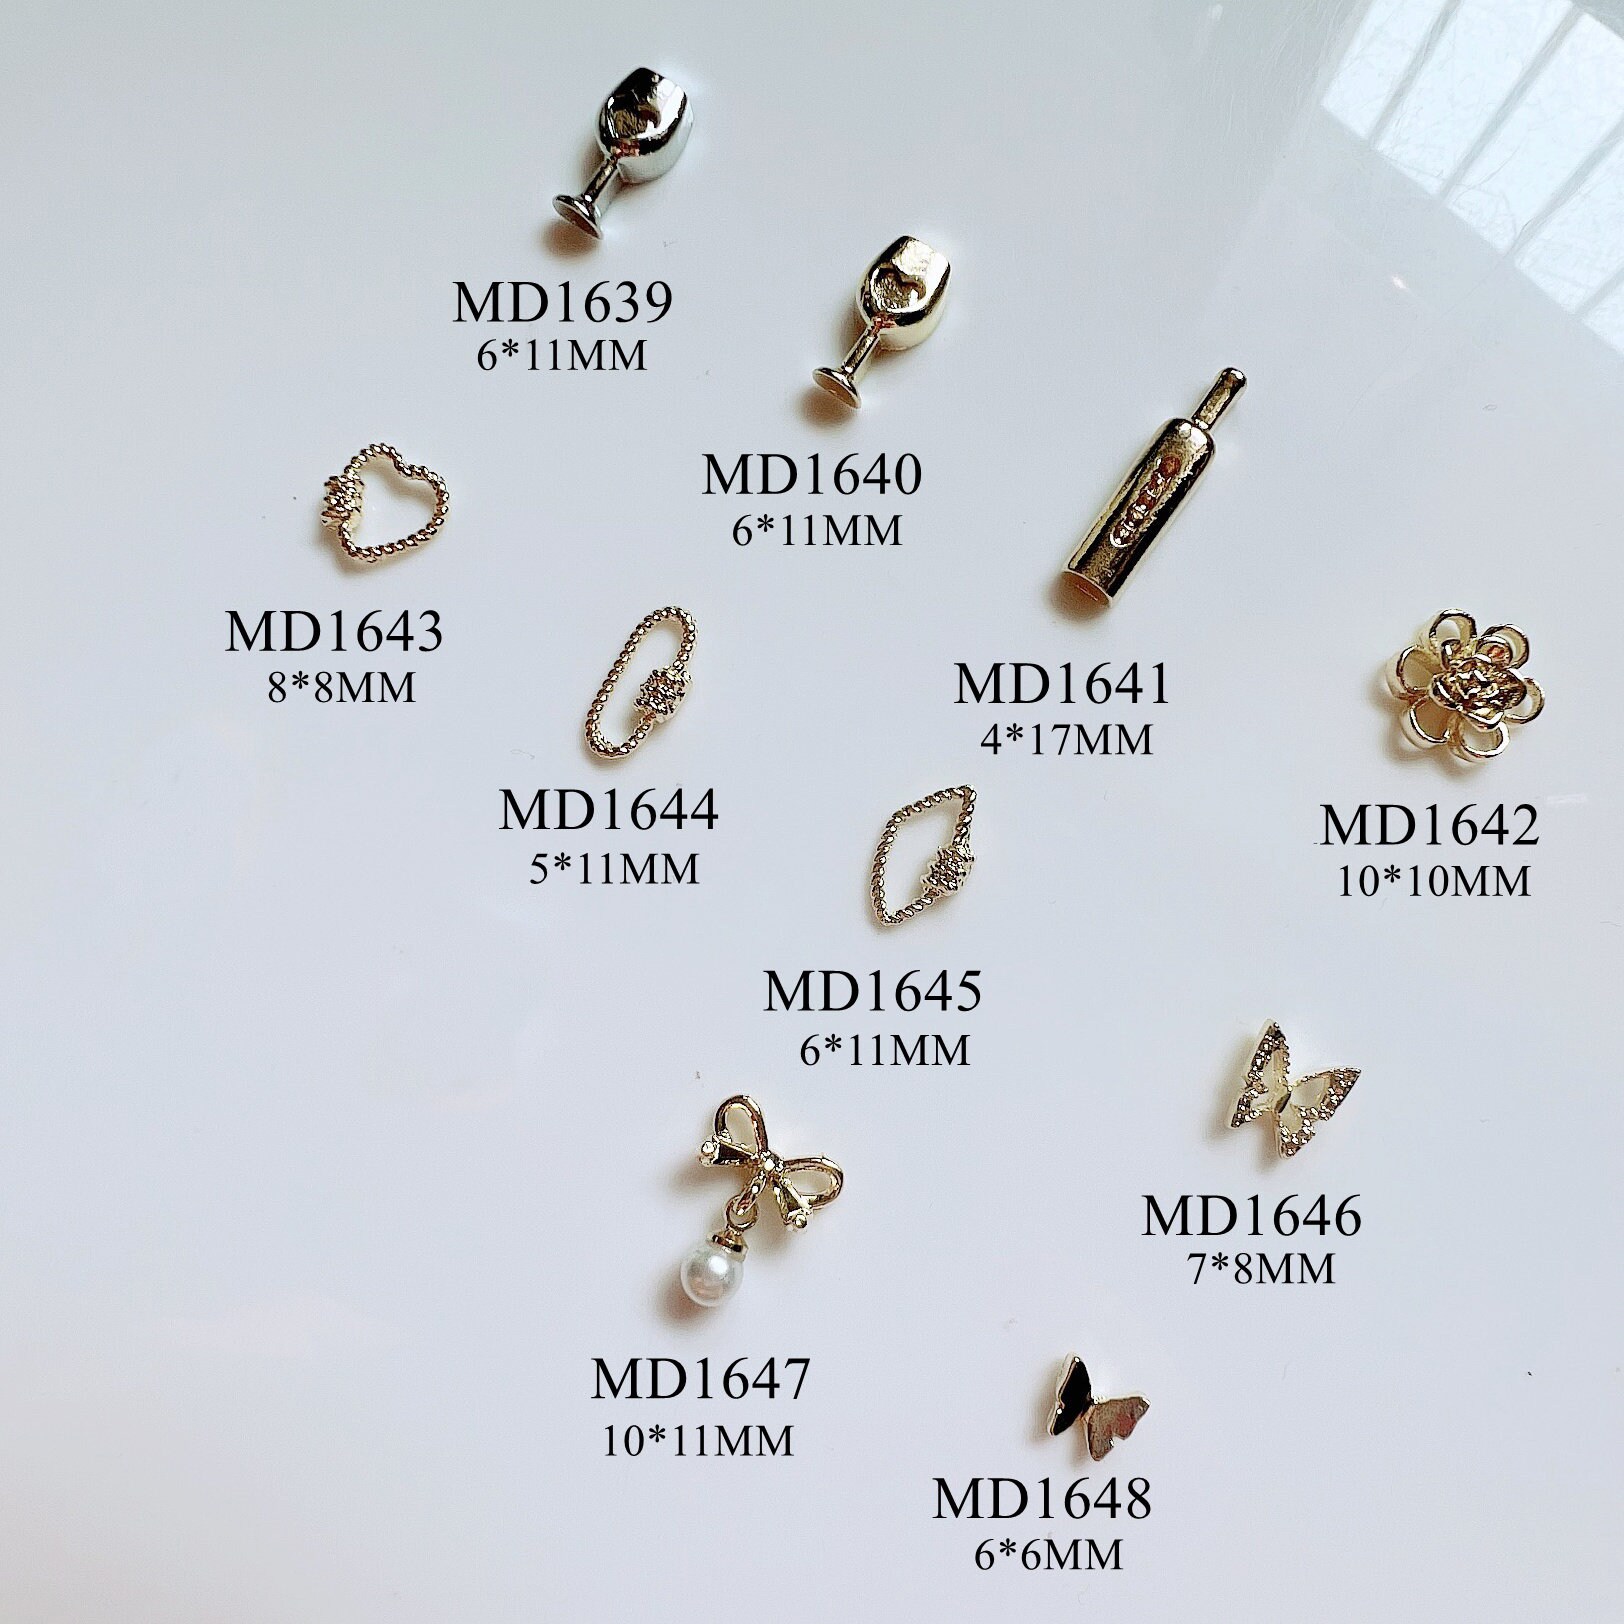 5 Stück Metall 3D Charms Dekoration Blume Schmetterling Schleife Brille Deko Mit Strass Nail Art von Etsy - NailAngel2019